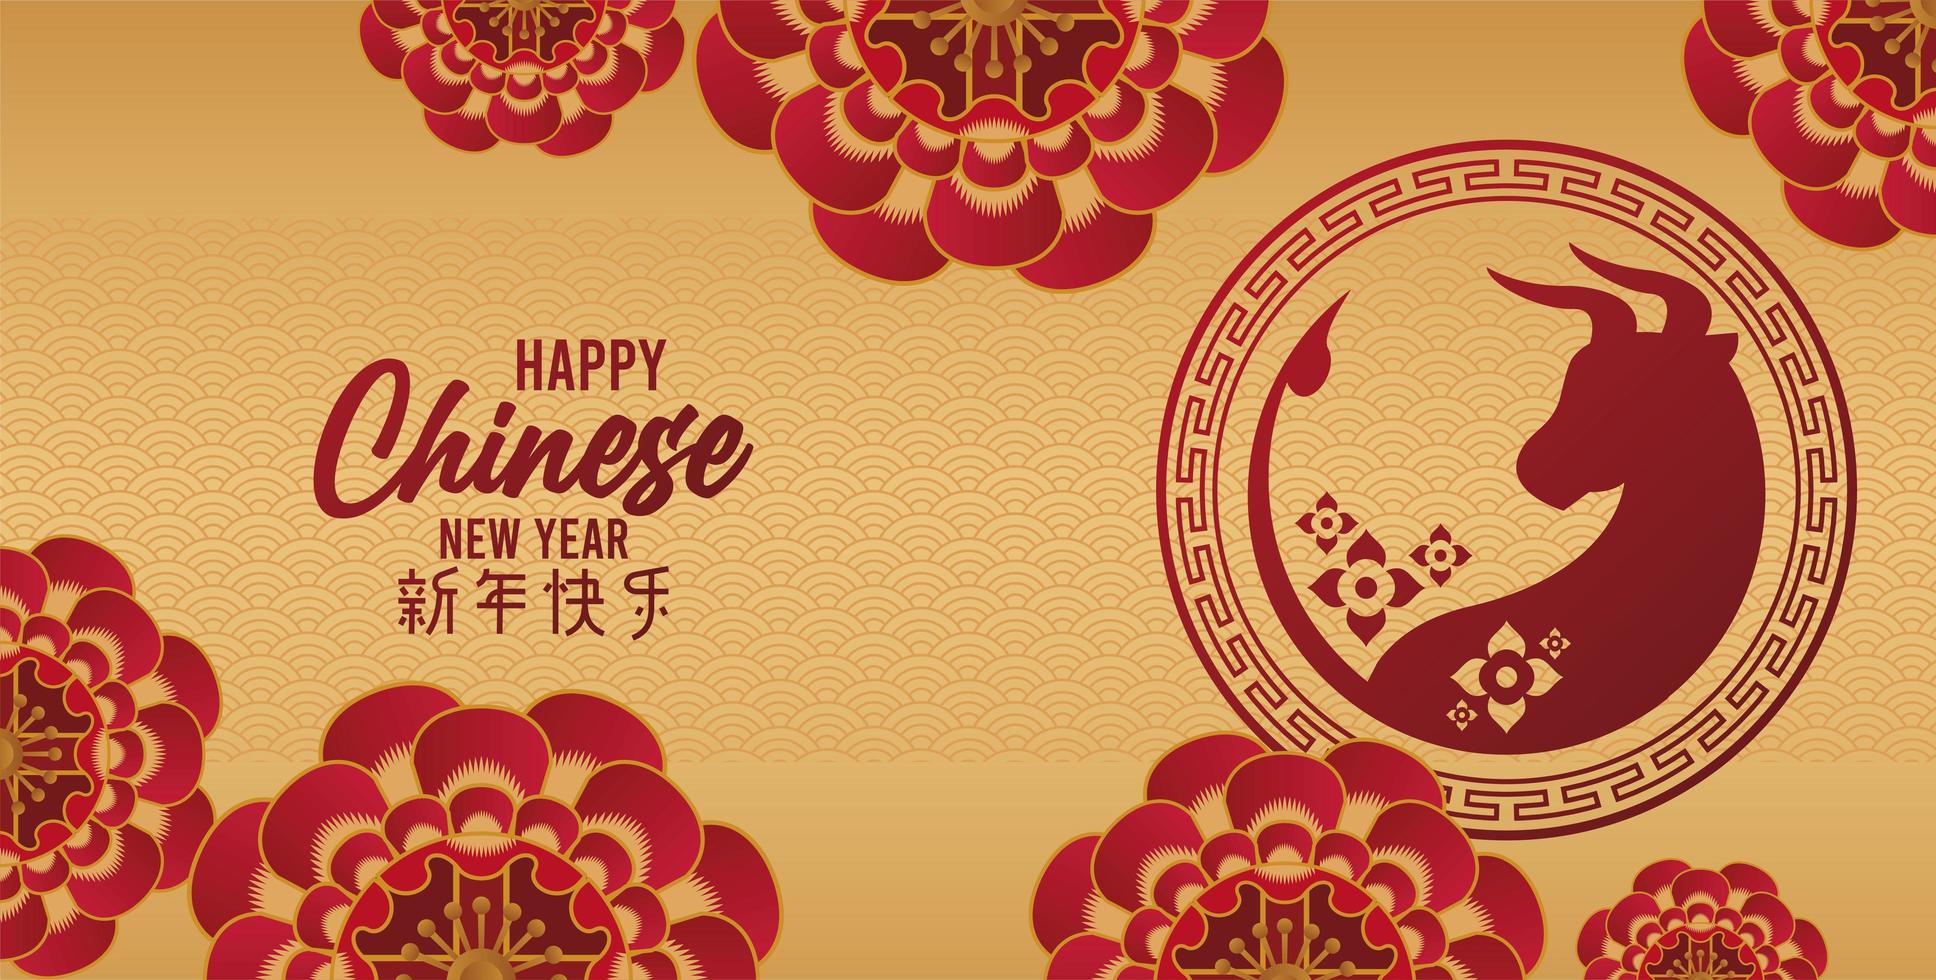 carte de joyeux nouvel an chinois avec des fleurs et des bœufs sur fond doré vecteur